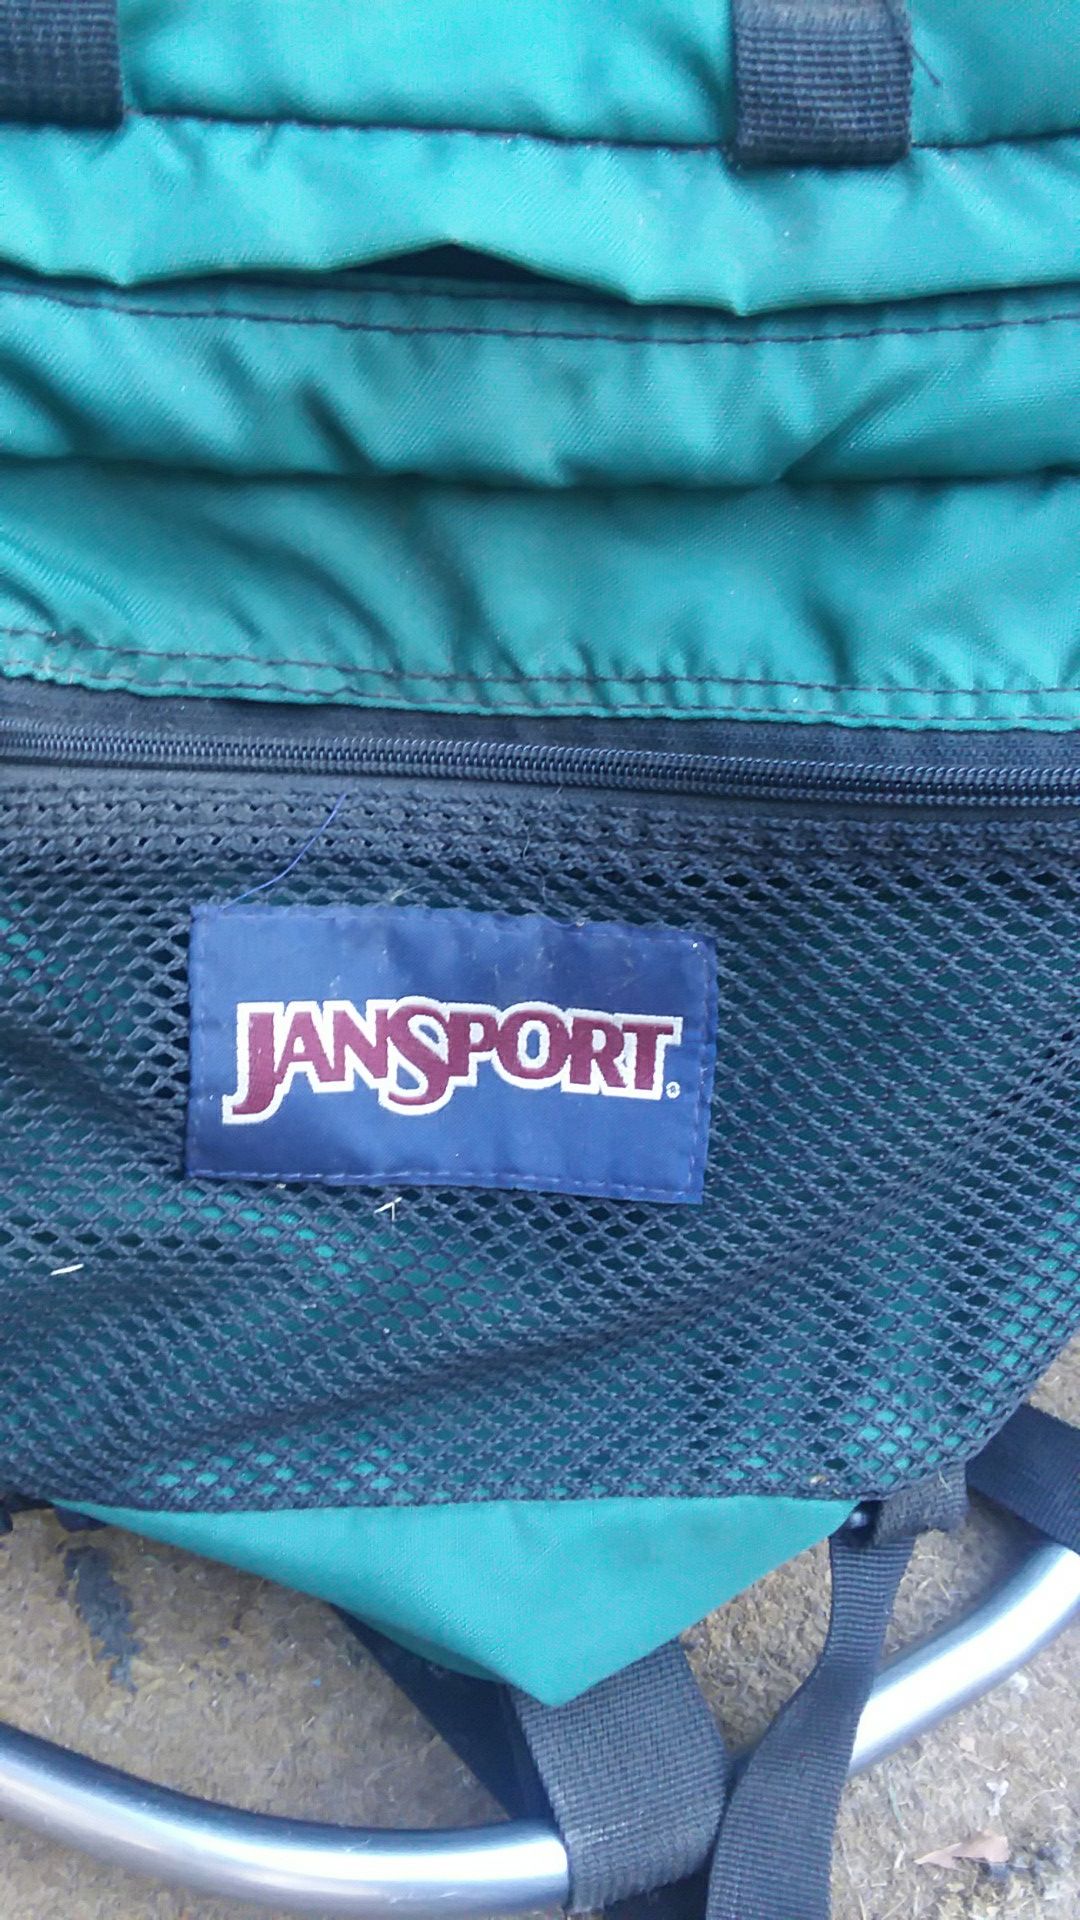 Jansport backpacking backpack. Metal frame